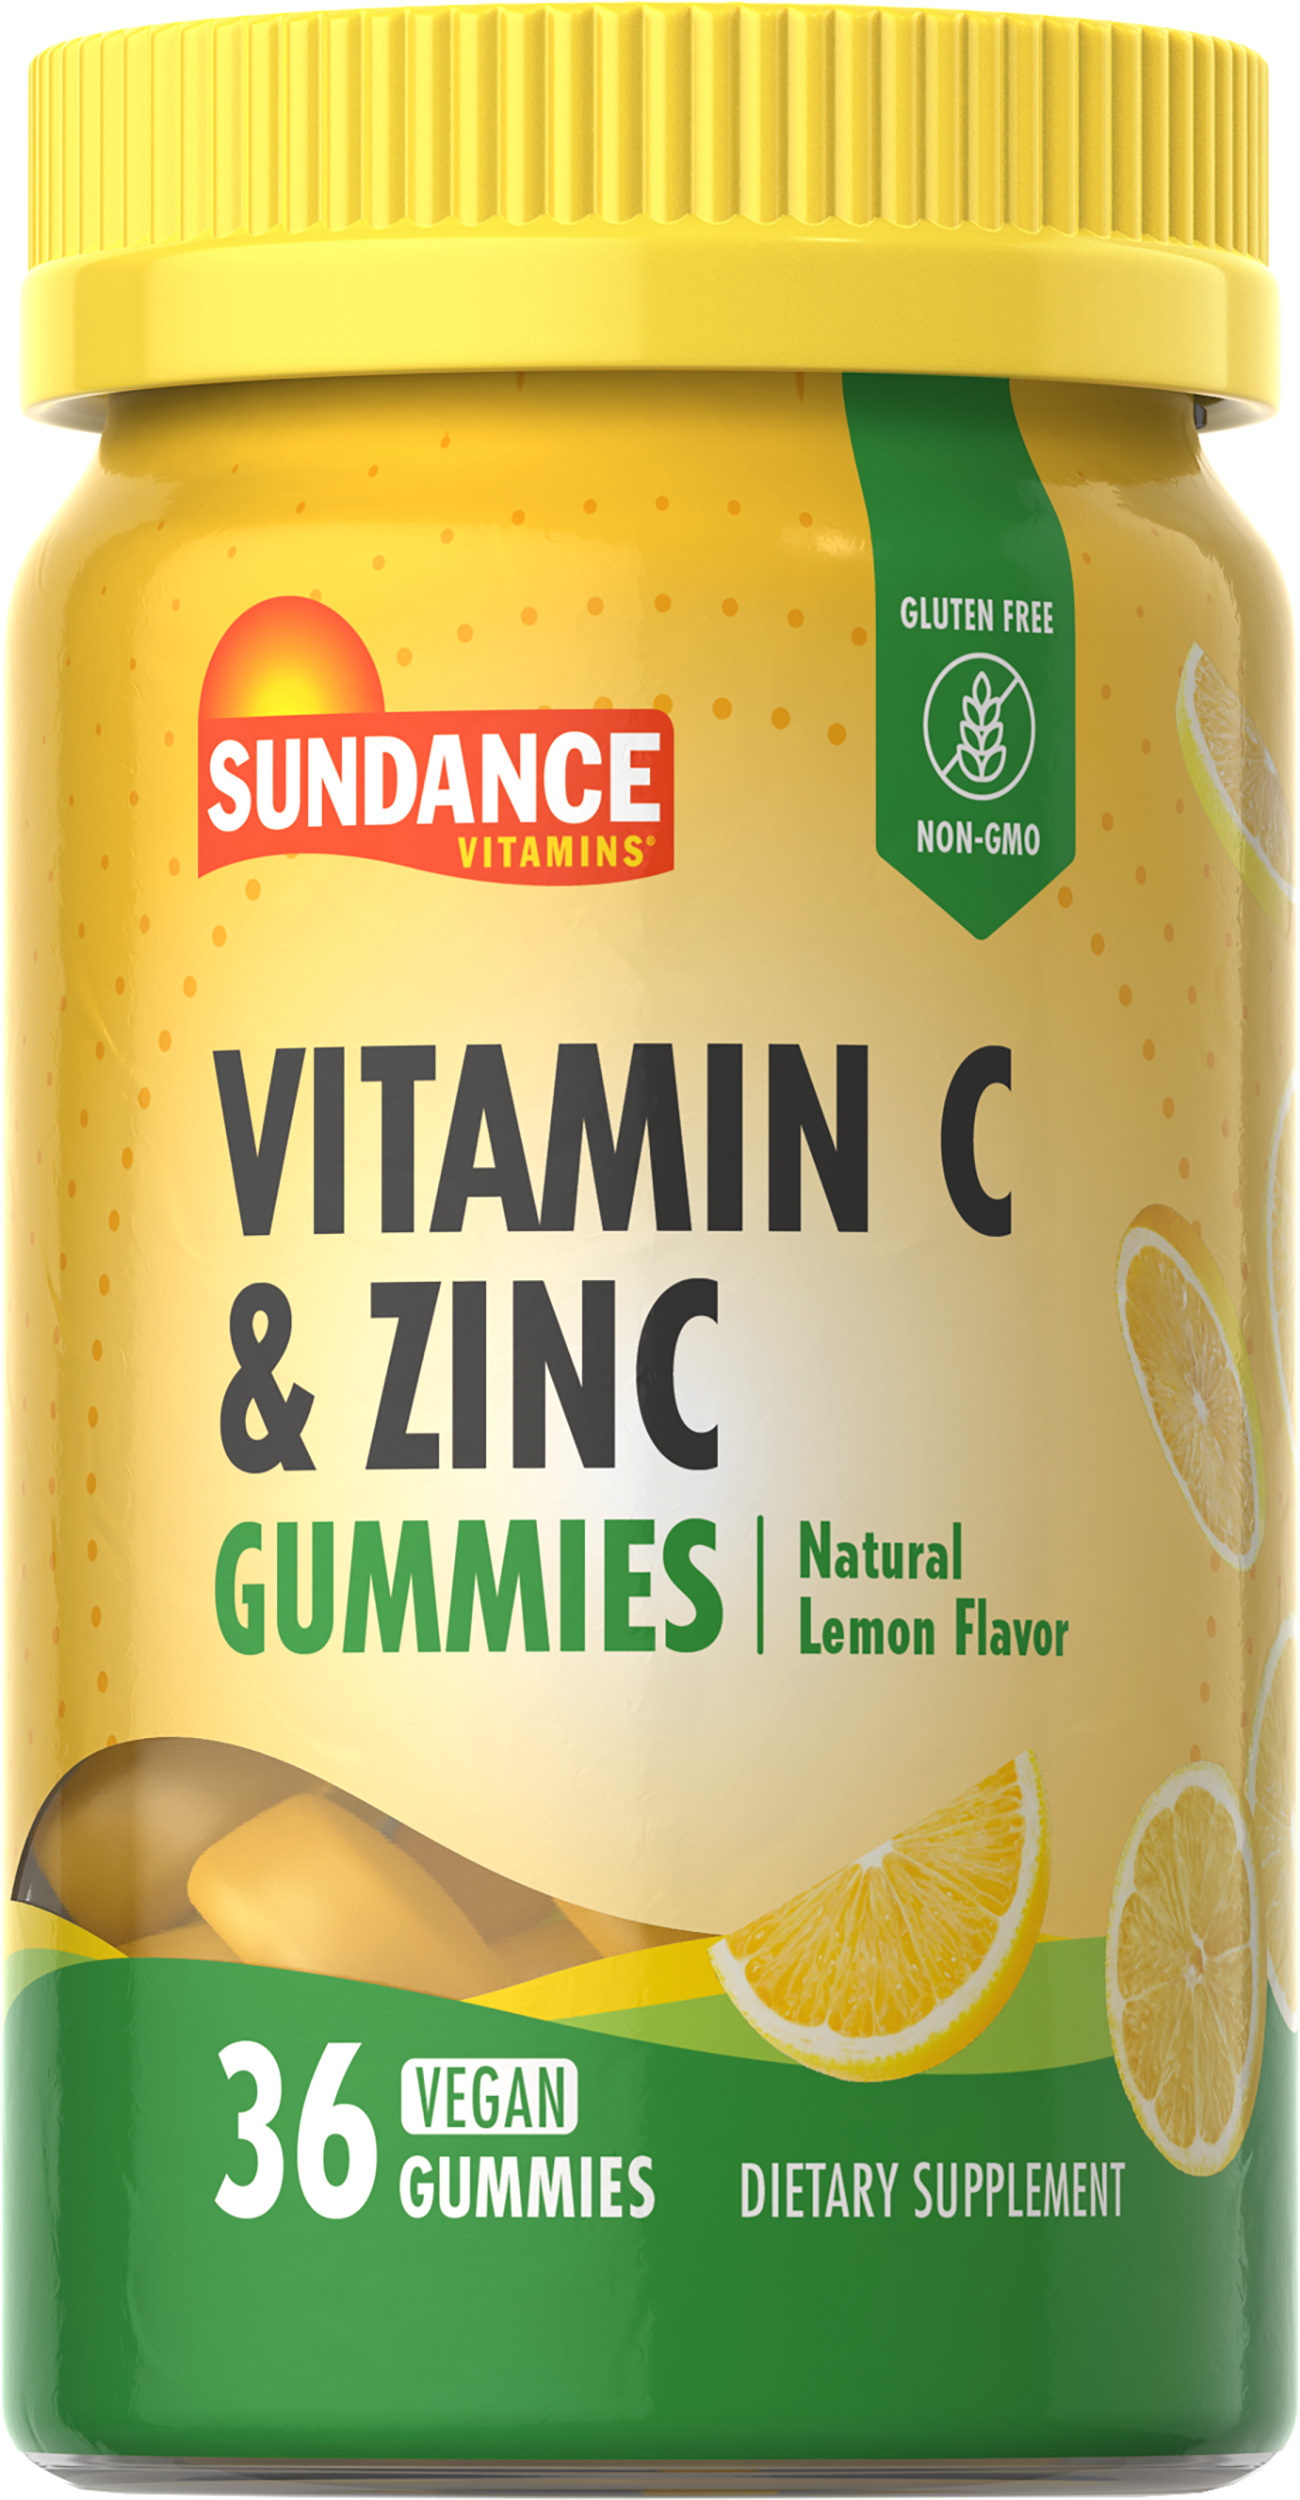 Vitamin C & Zinc